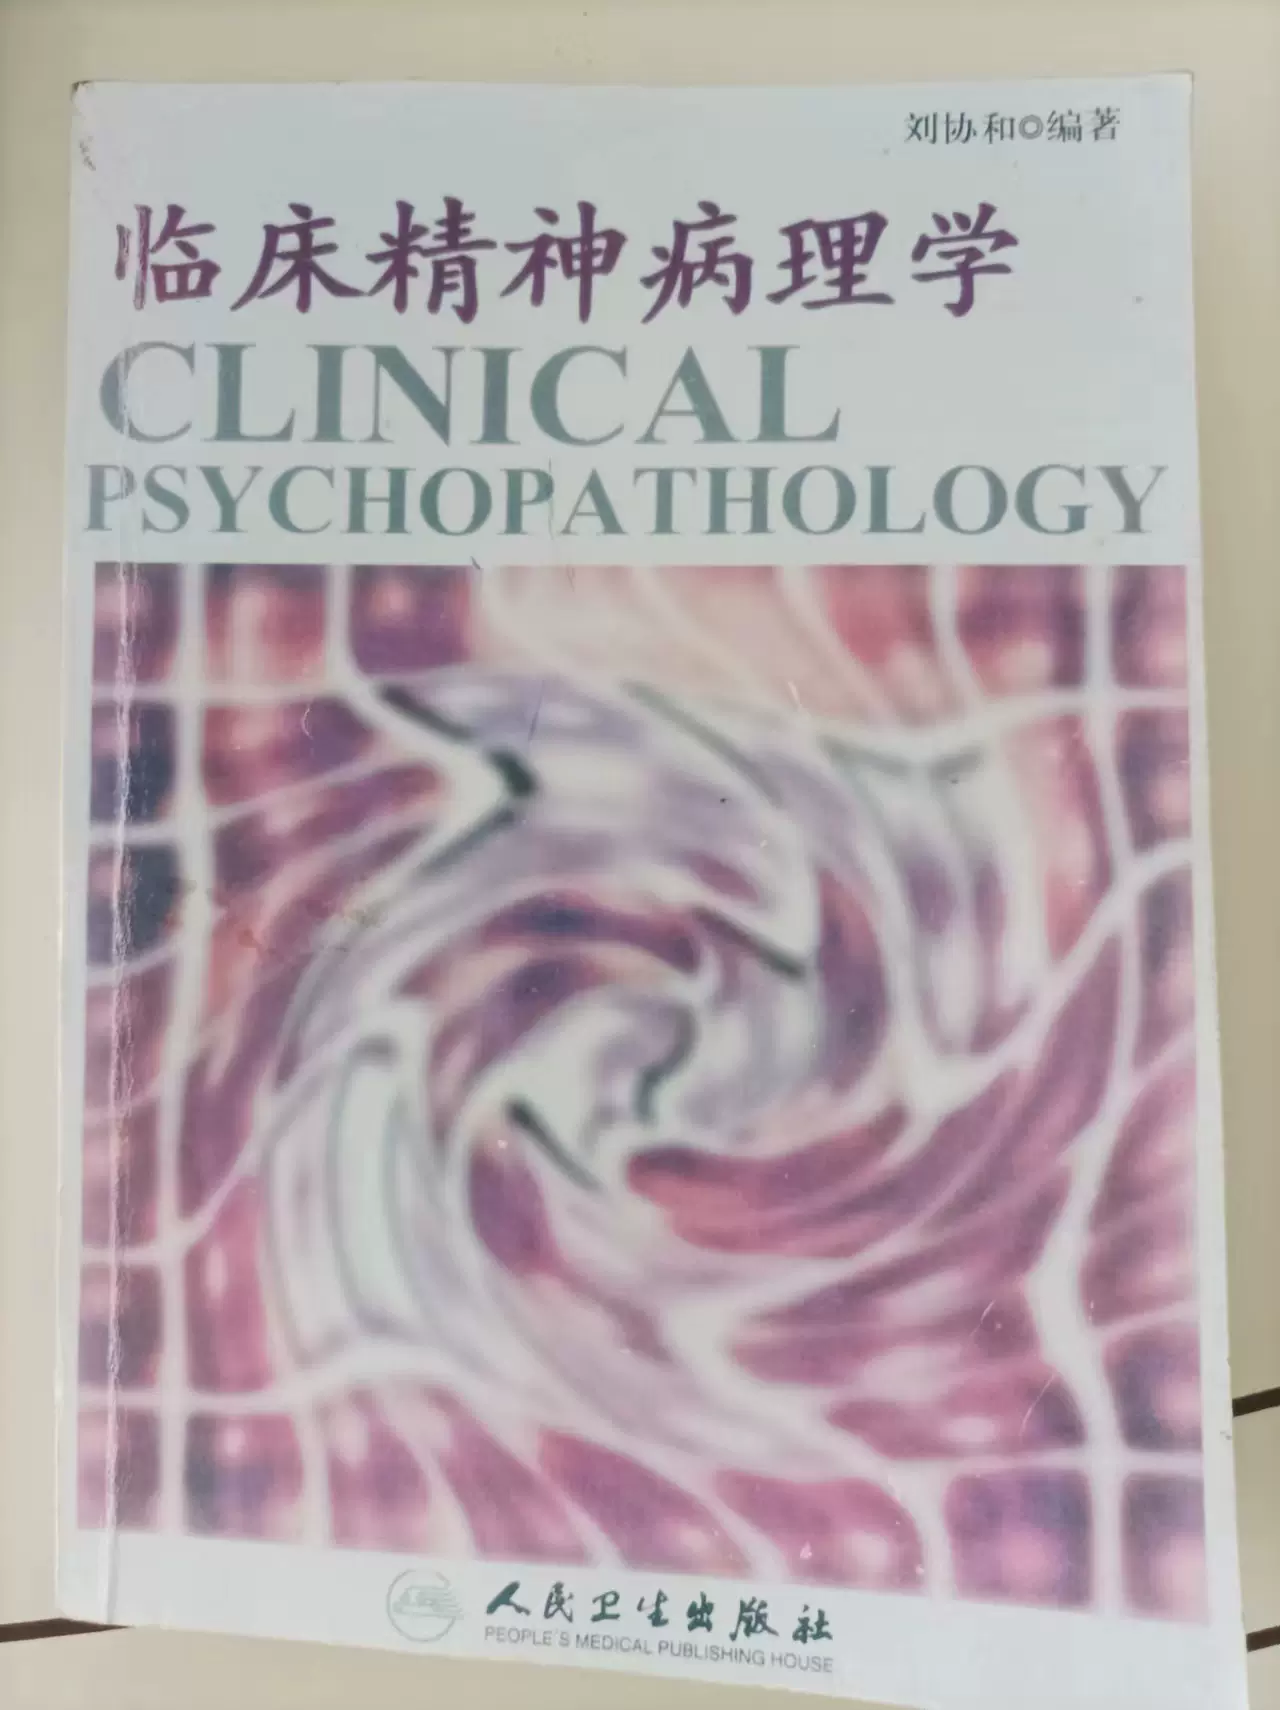 二手正版临床精神病理学9787117150408刘协和人民卫-Taobao